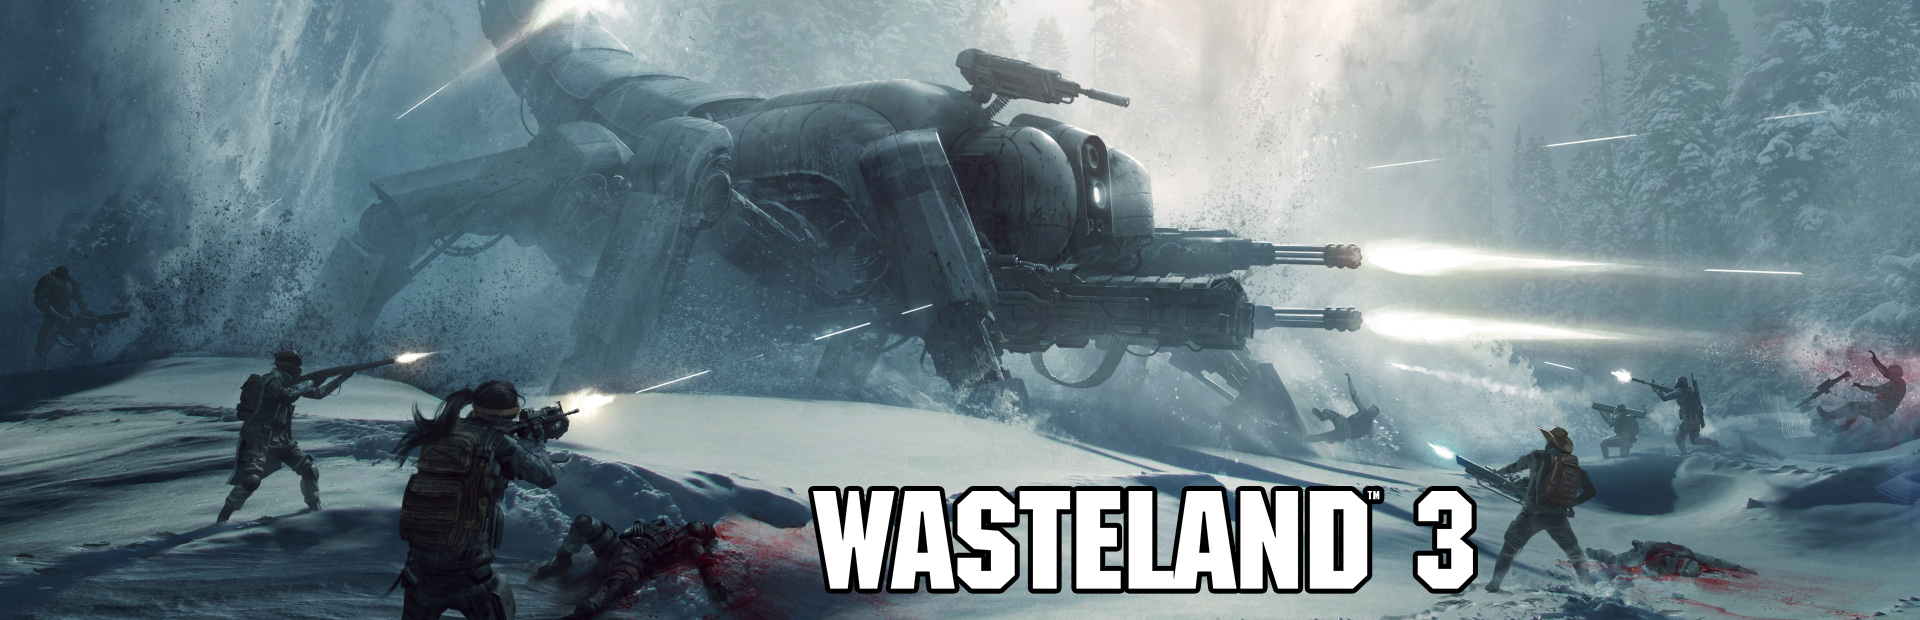 دانلود بازی Wasteland 3 برای کامپیوتر | گیمباتو